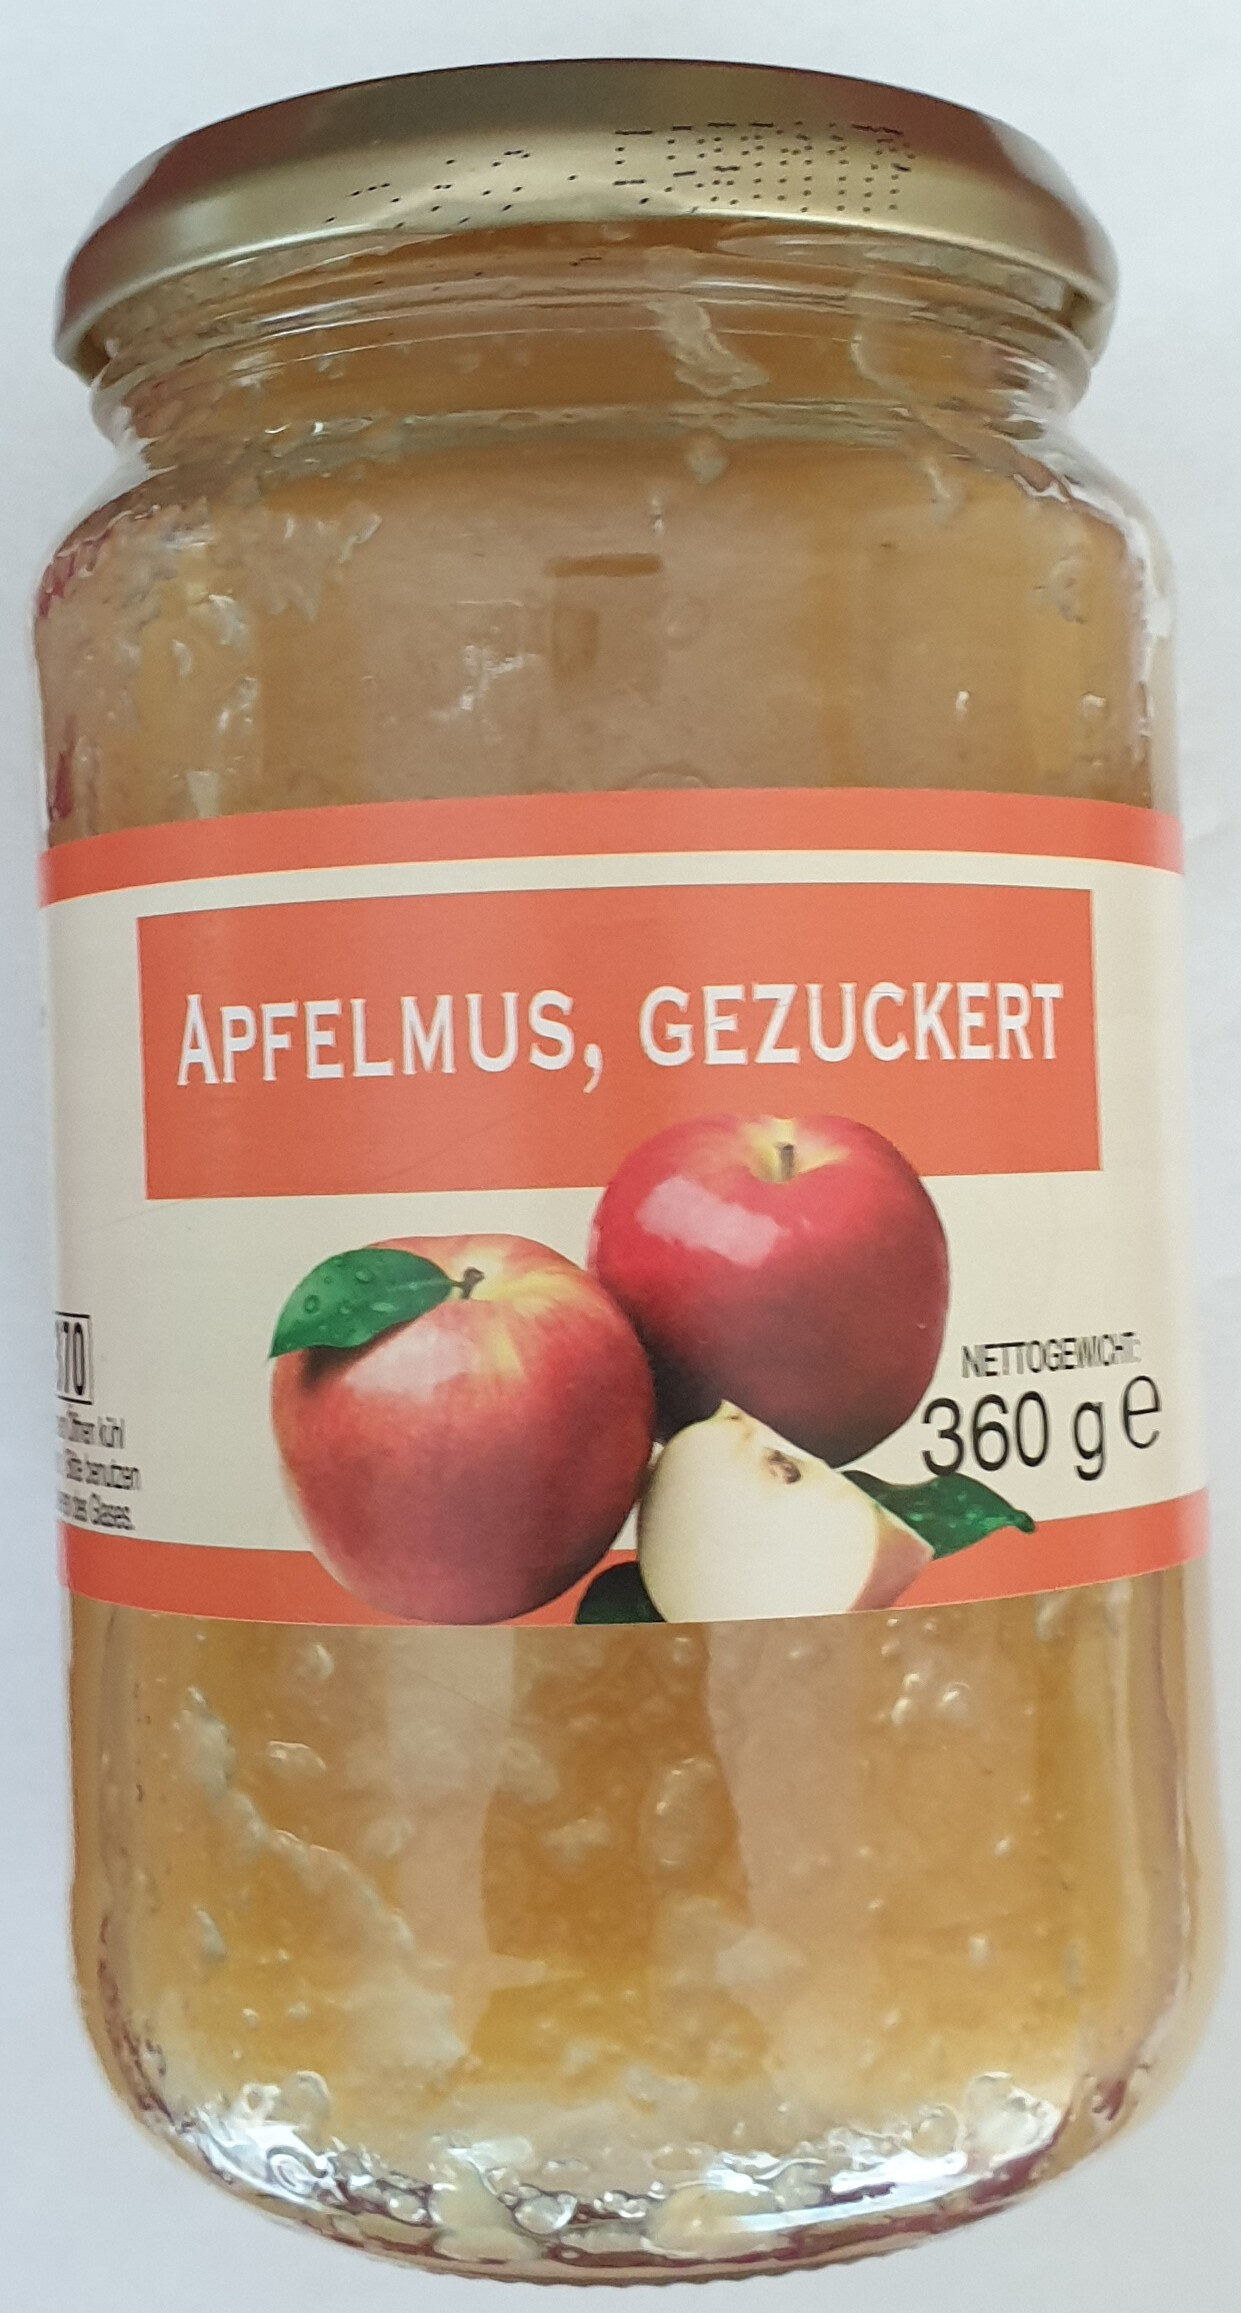 Apfelmus, gezuckert - Produkt